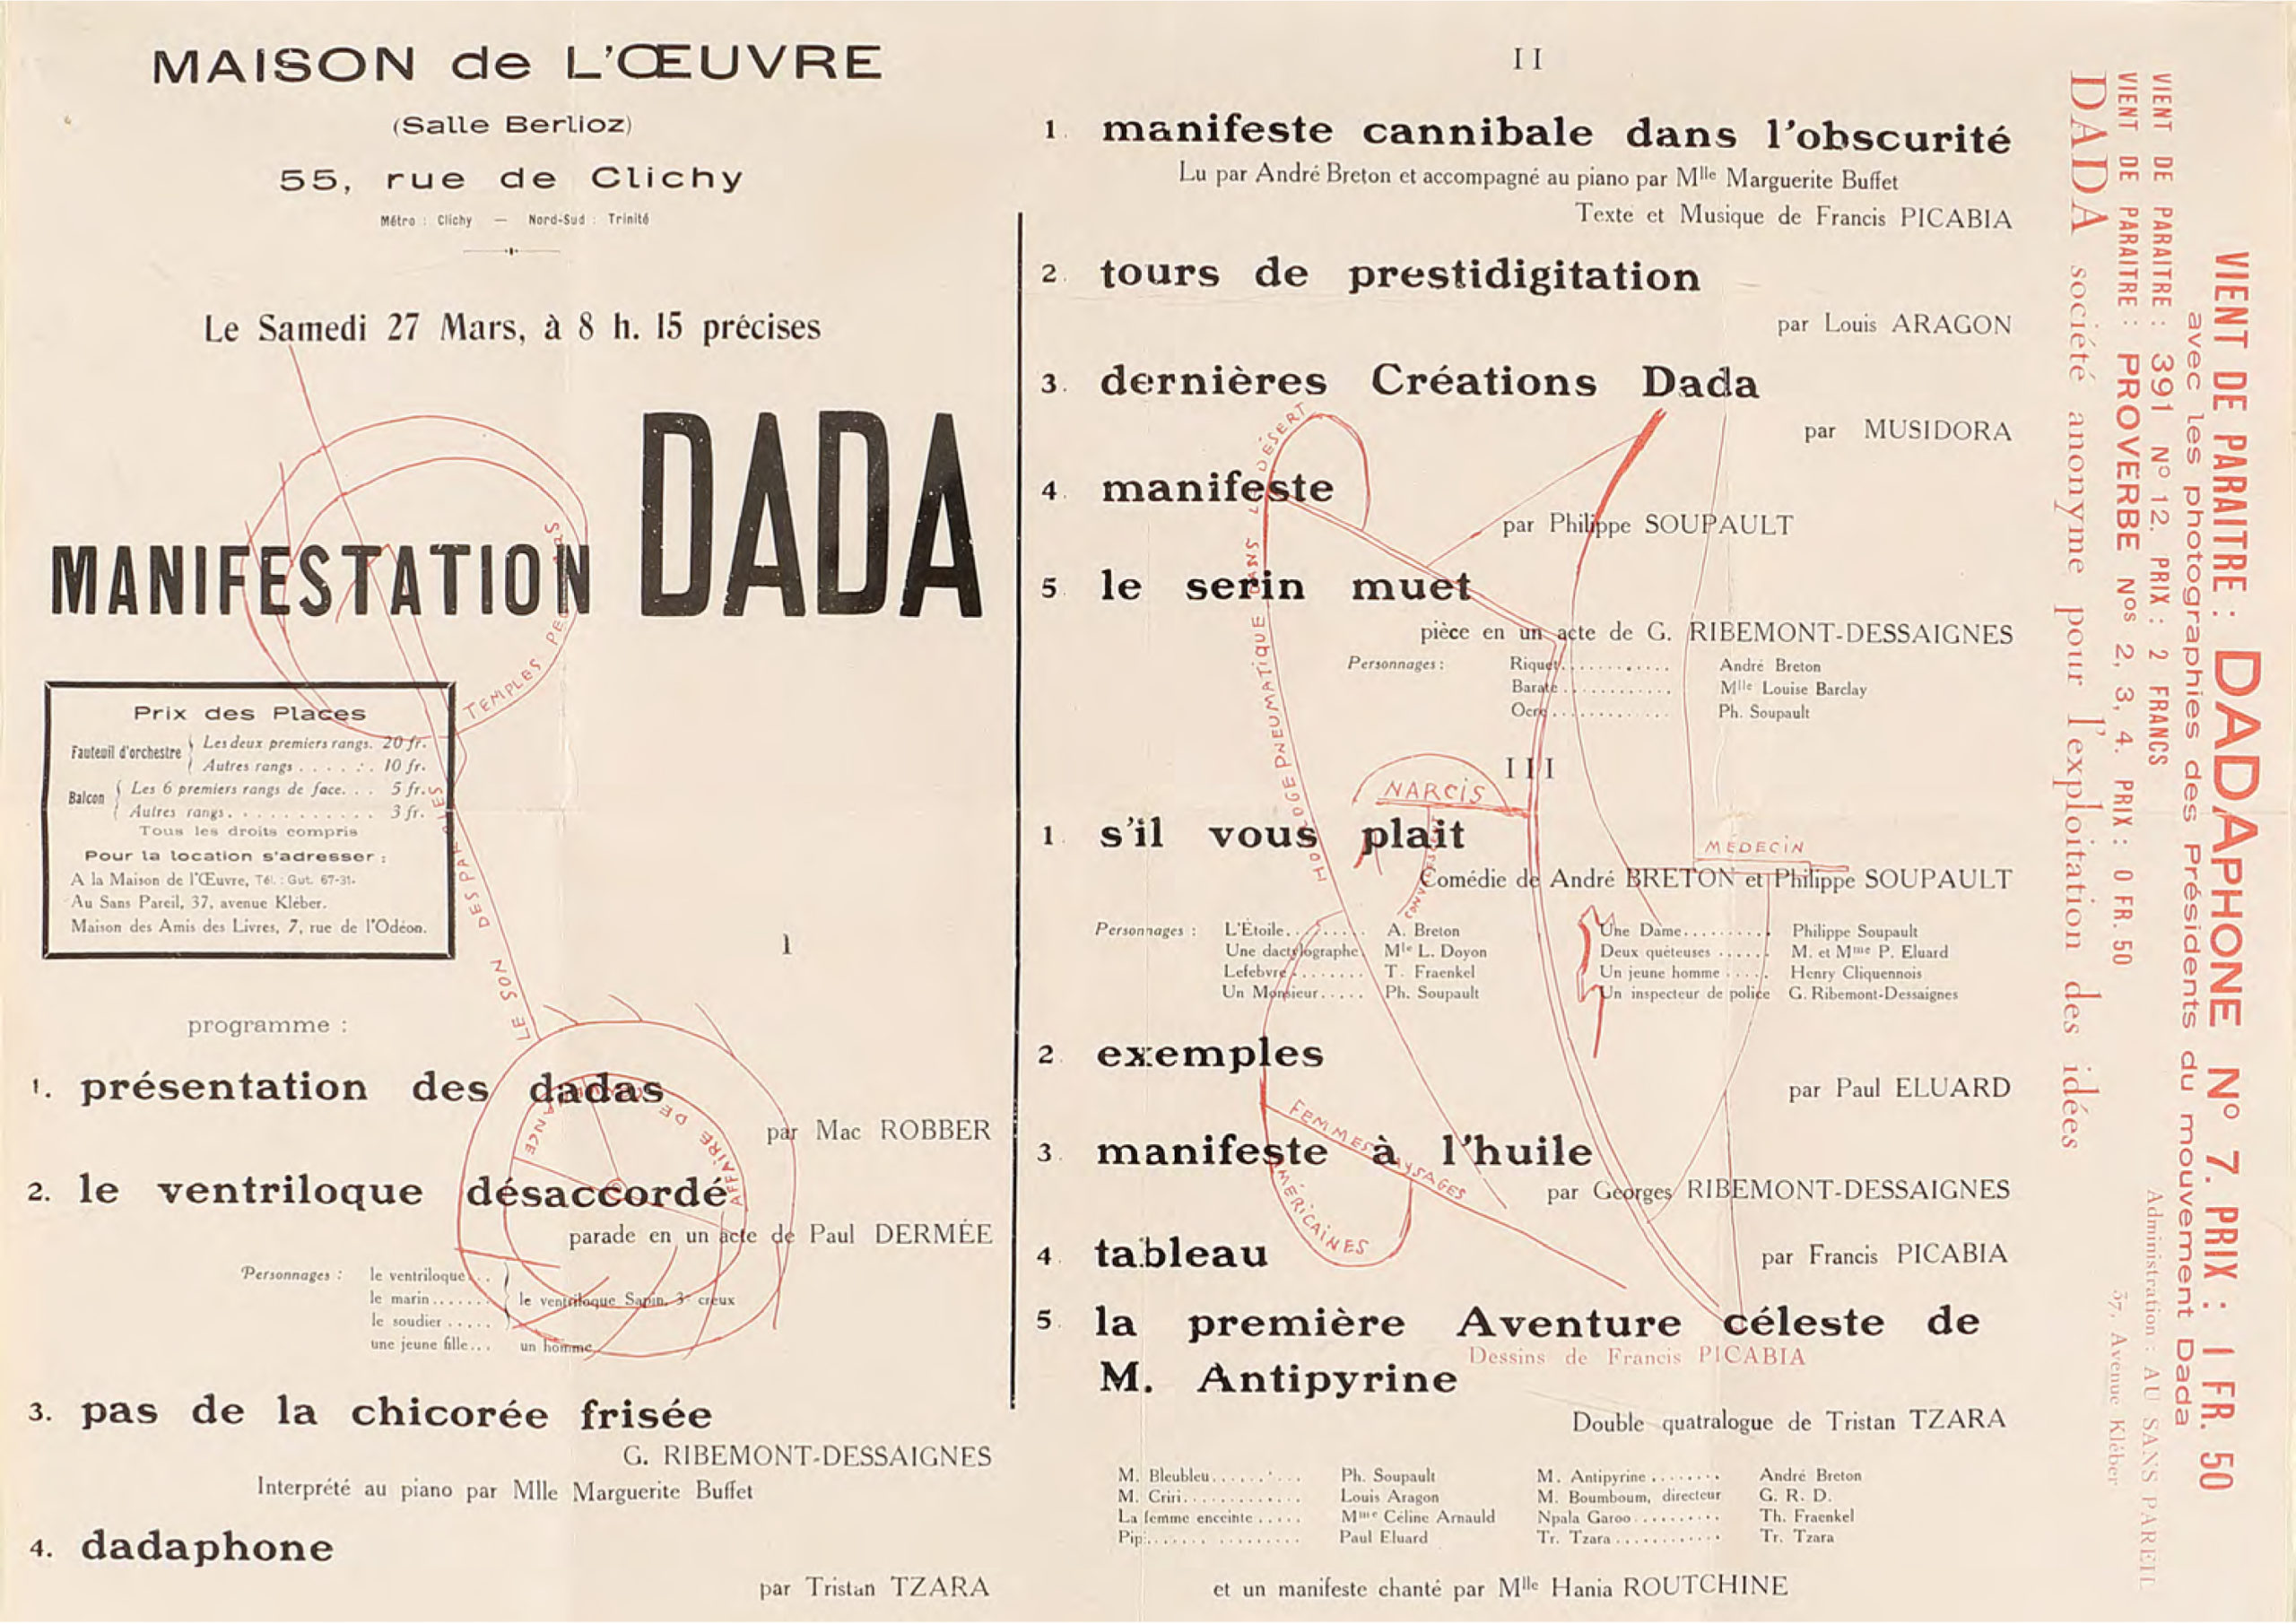 Program for the Manifestation Dada at Théâtre de l’oeuvre, Paris, 27 March 1920